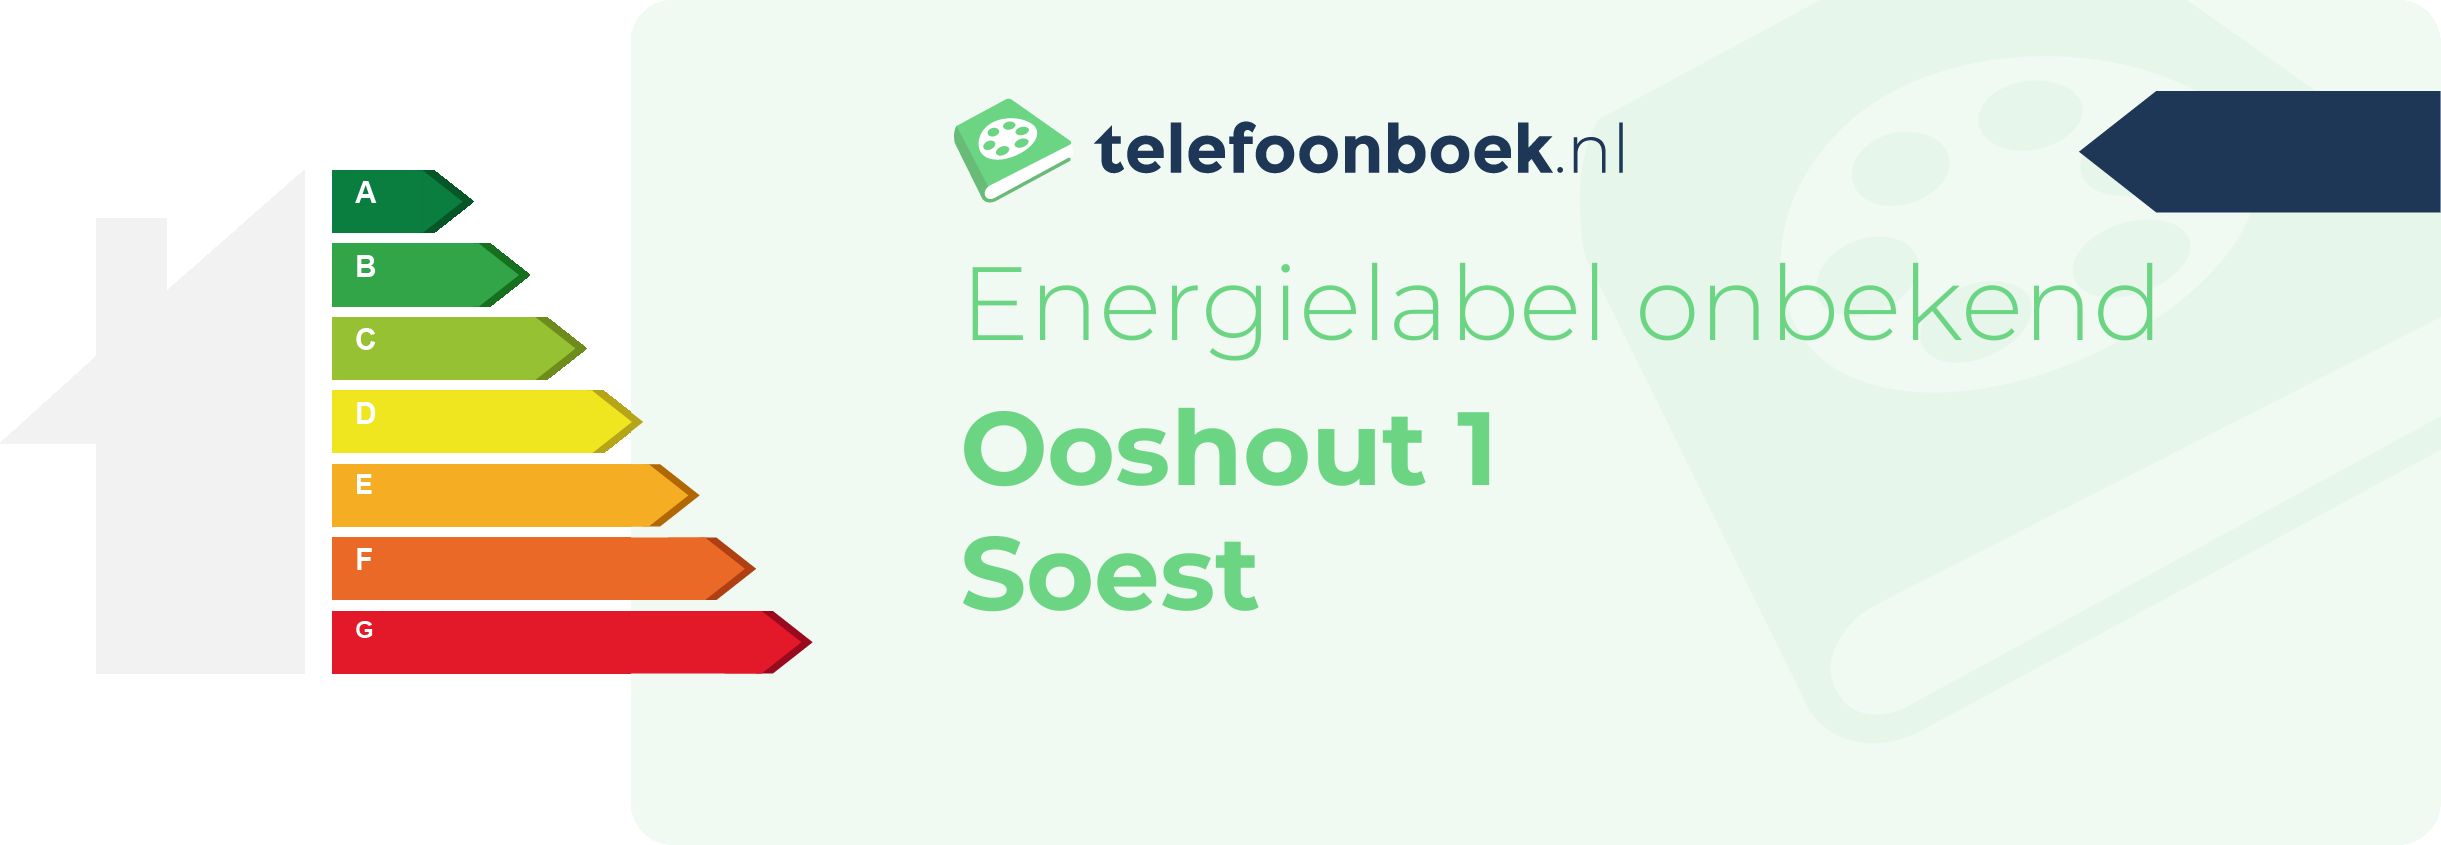 Energielabel Ooshout 1 Soest